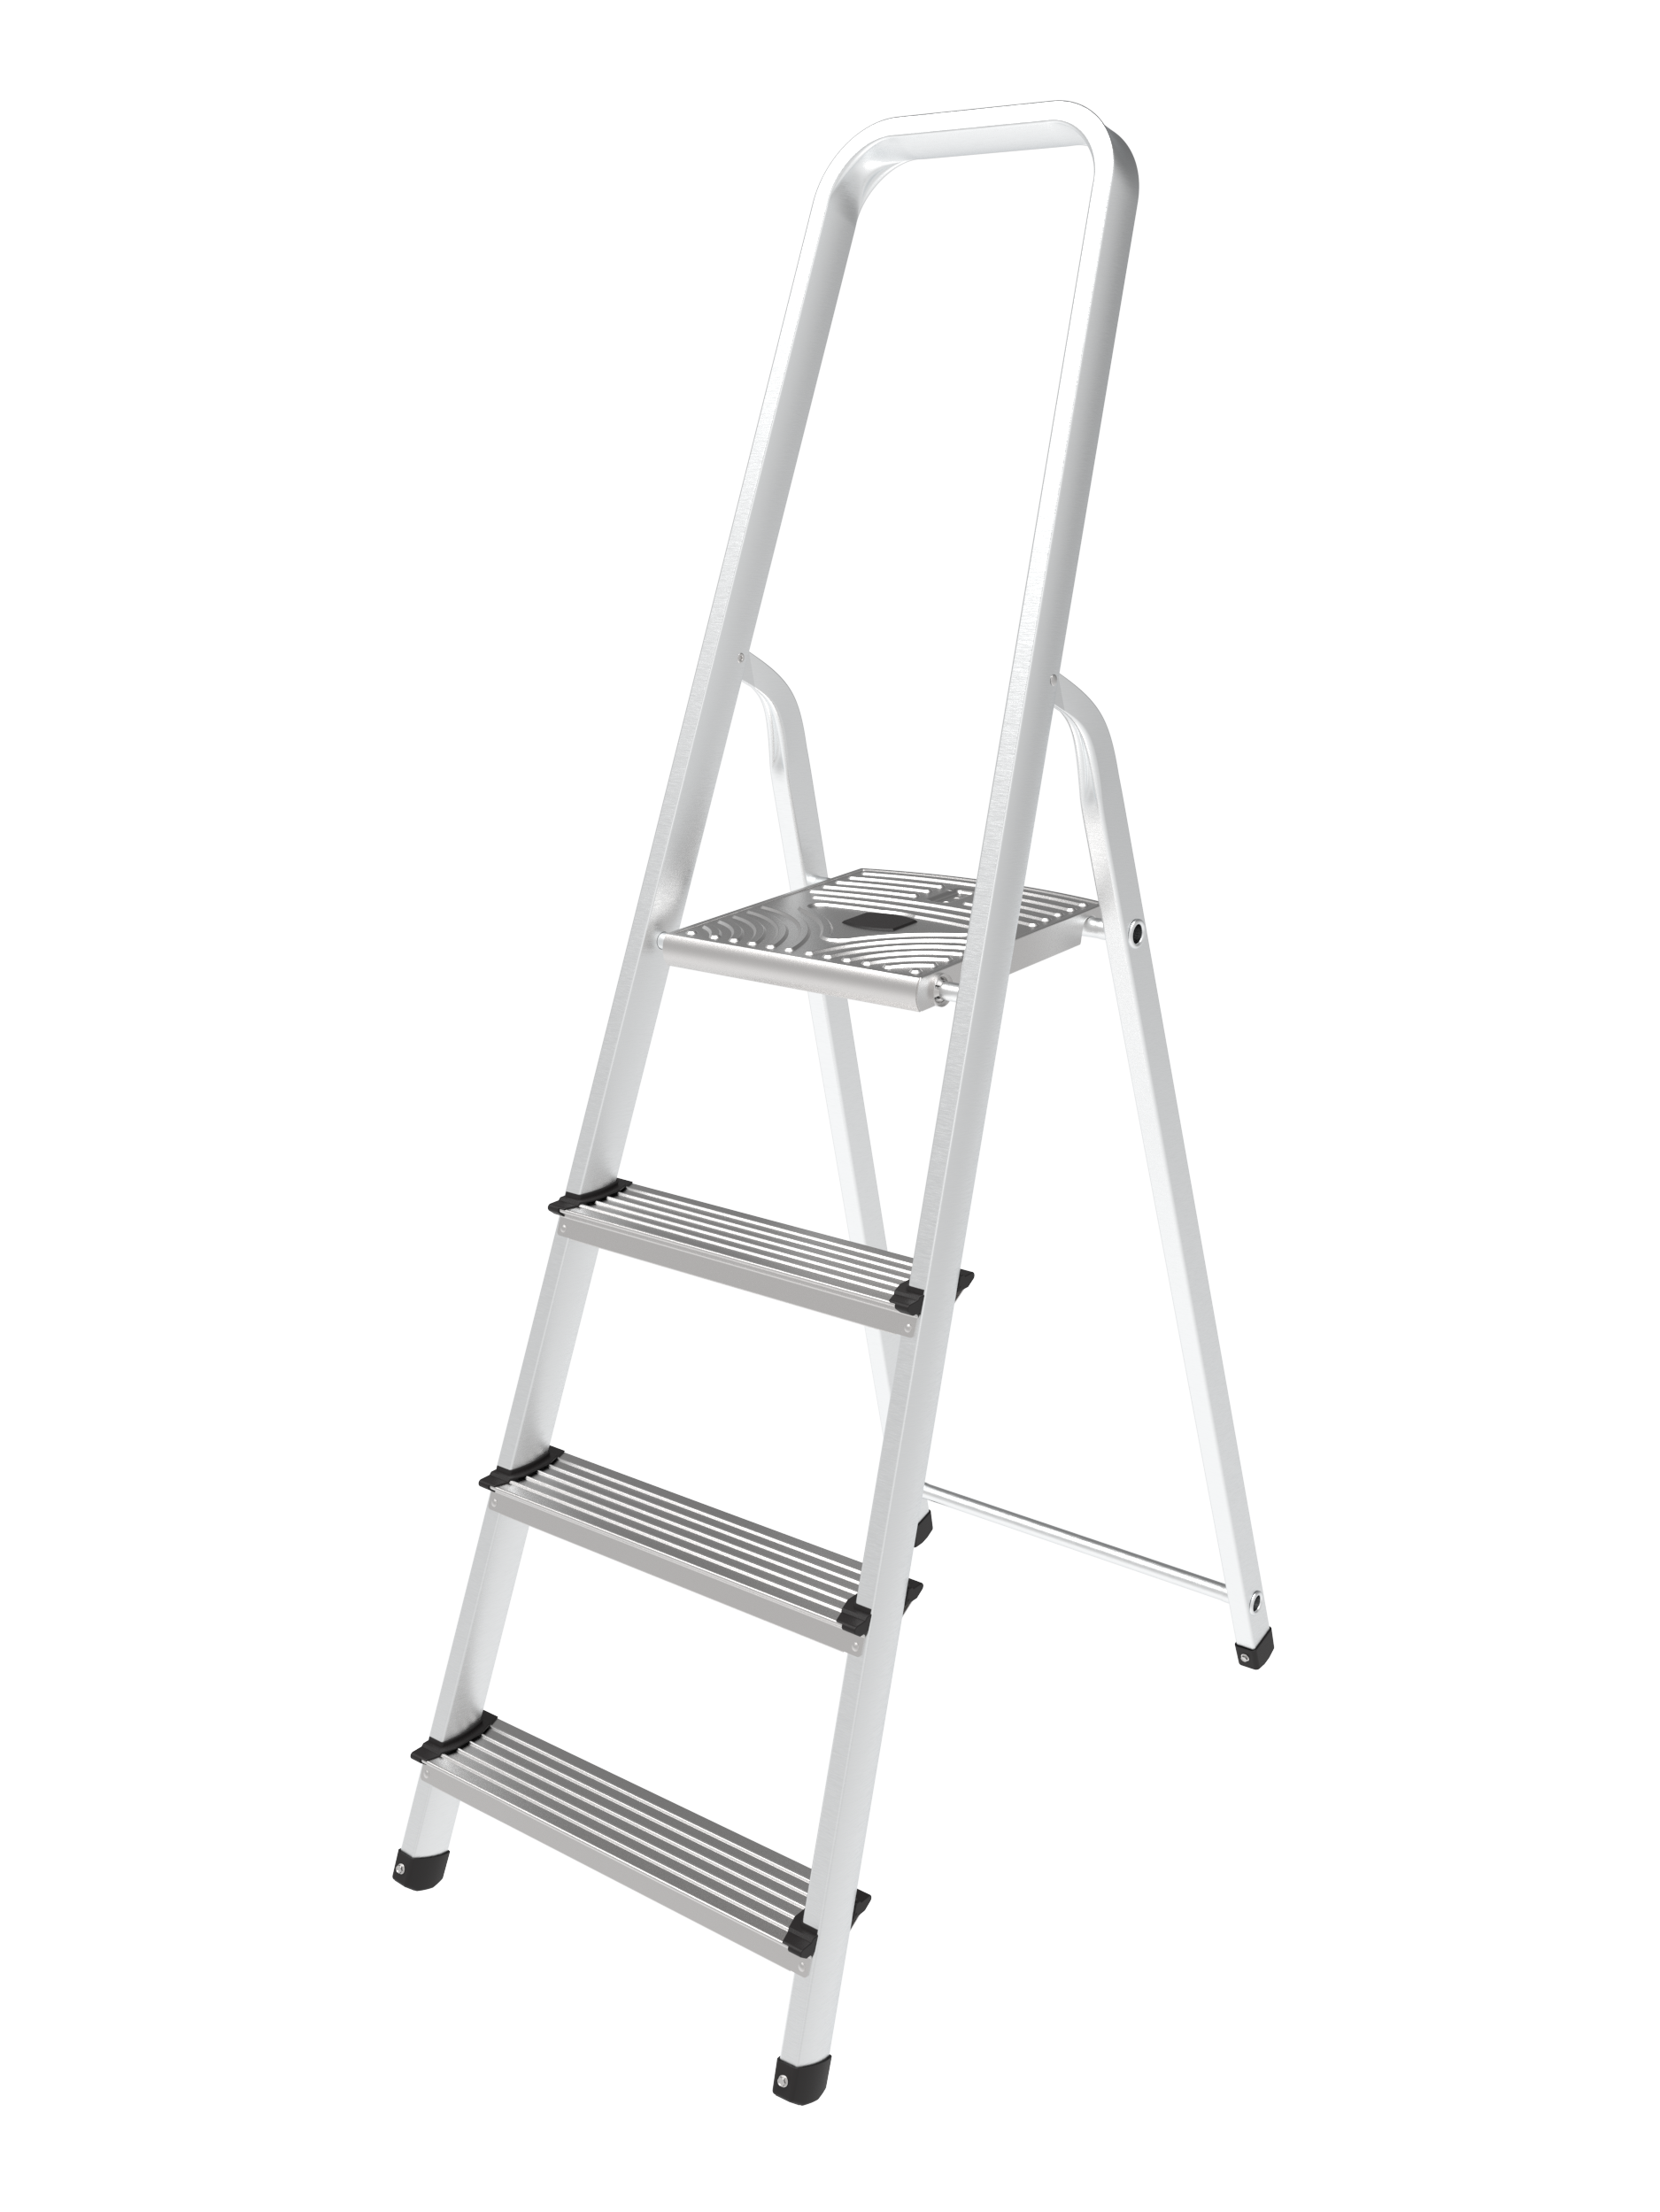 begin raket oven Ladder kopen? Kwaliteits ladders in alle formaten | Praxis